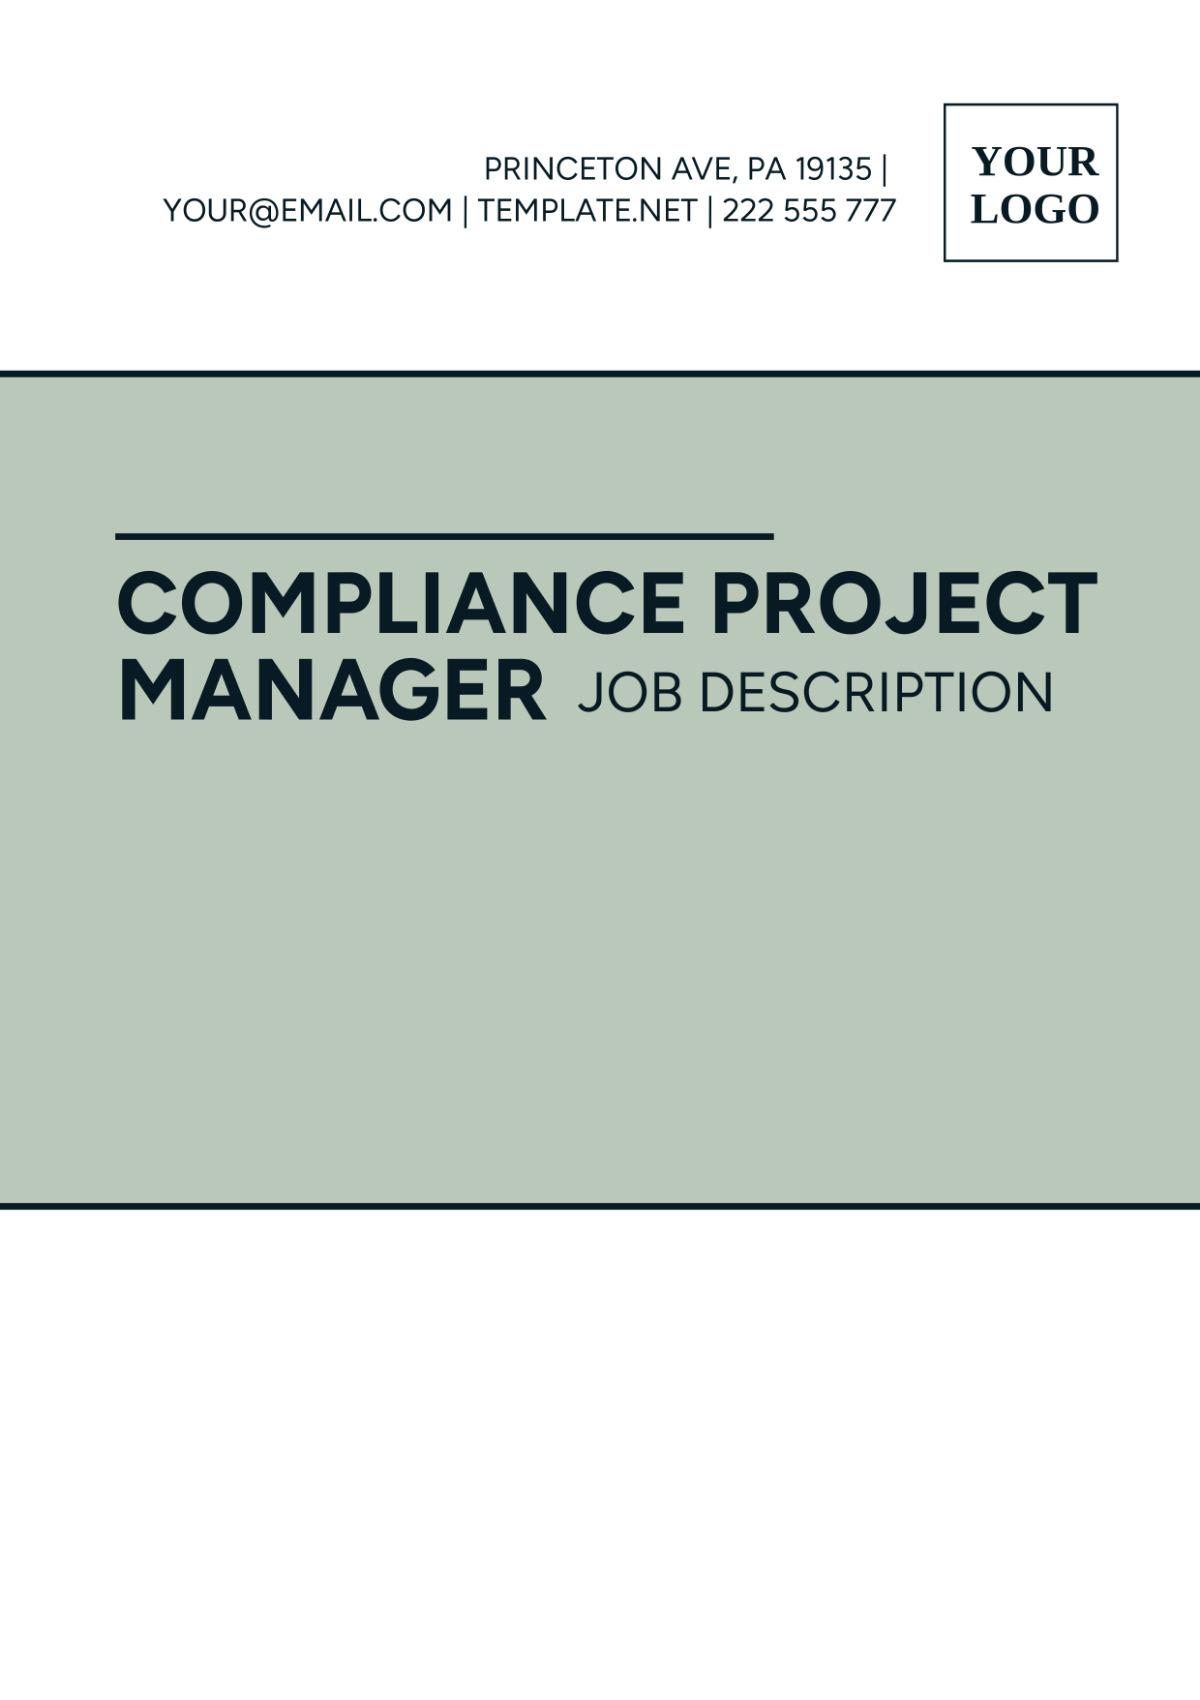 Compliance Project Manager Job Description Template